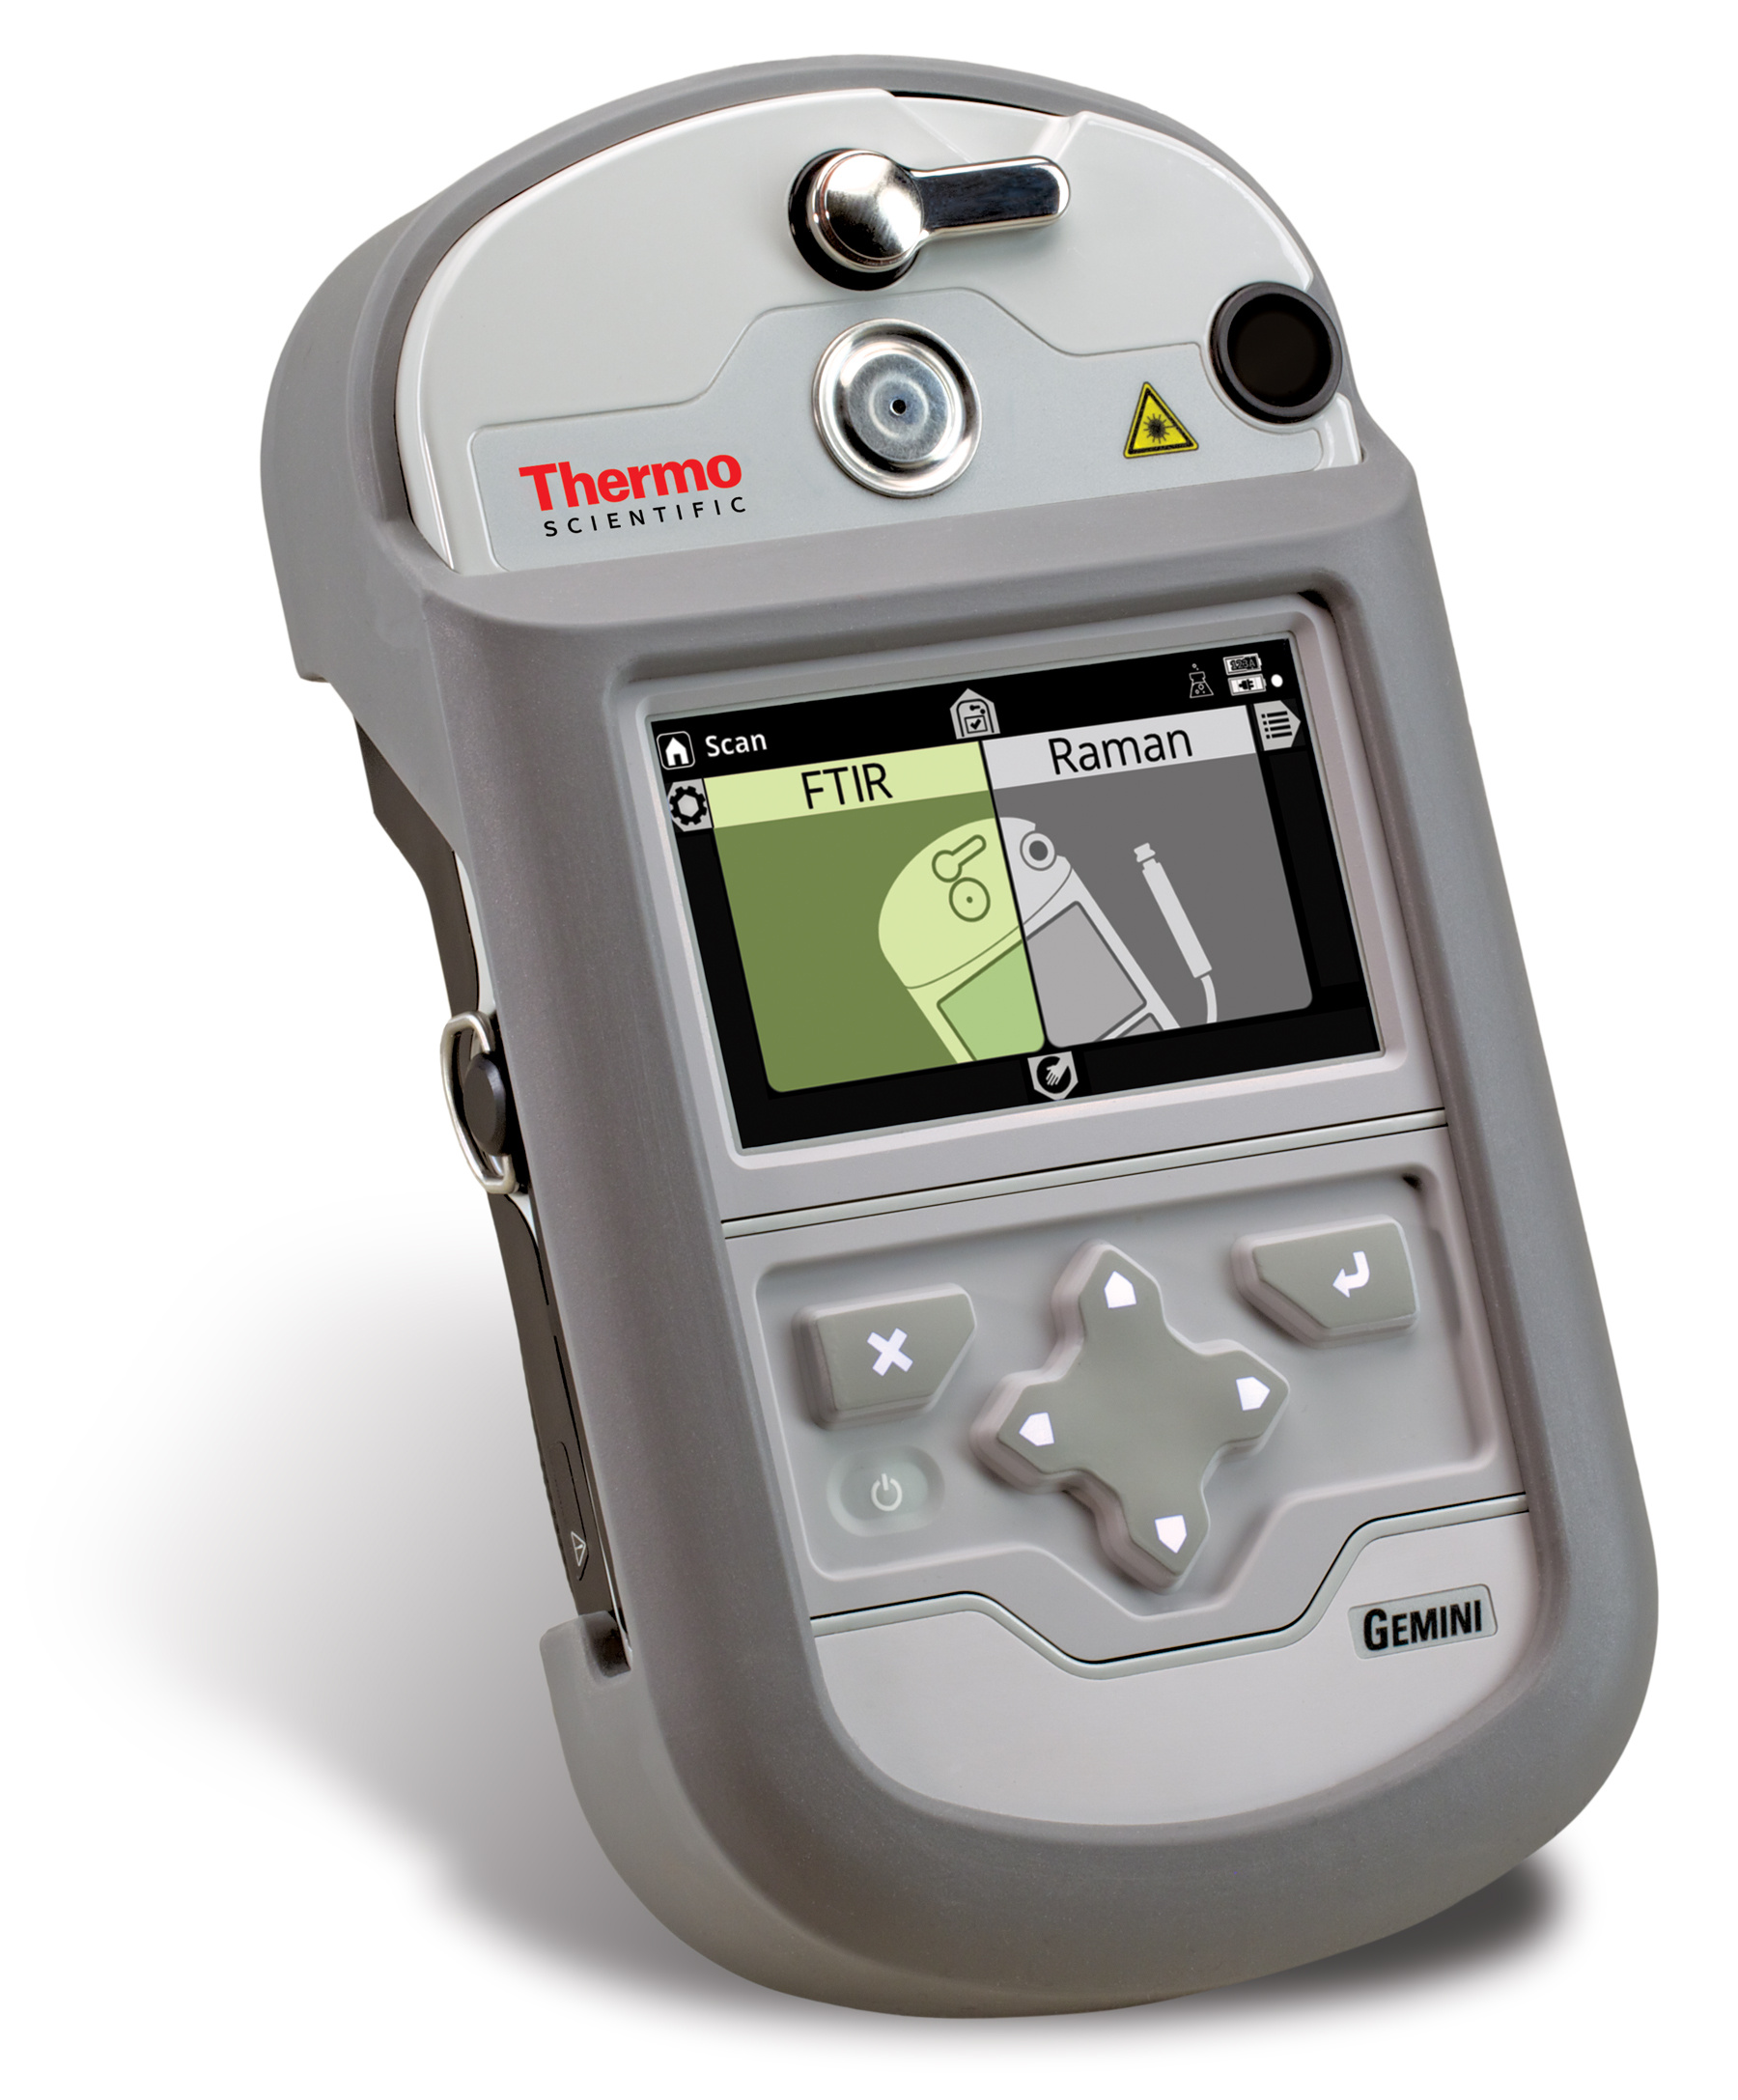 现场勘查小组和移动实验室采用Thermo Scientific 便携式分析仪分